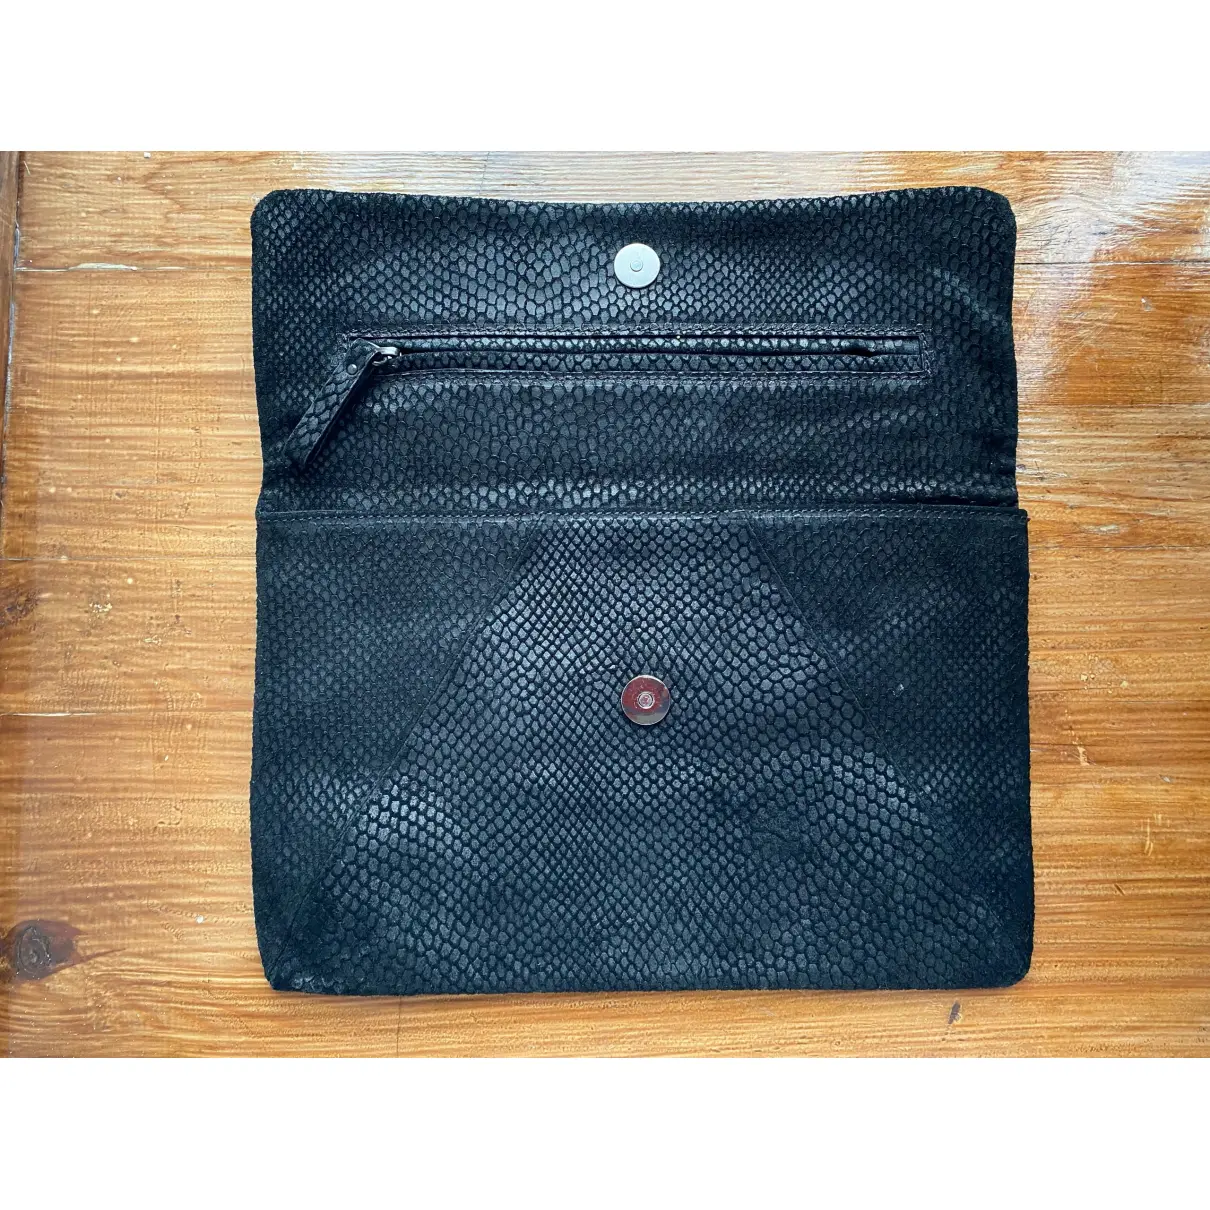 Leather clutch bag Yvonne Kone